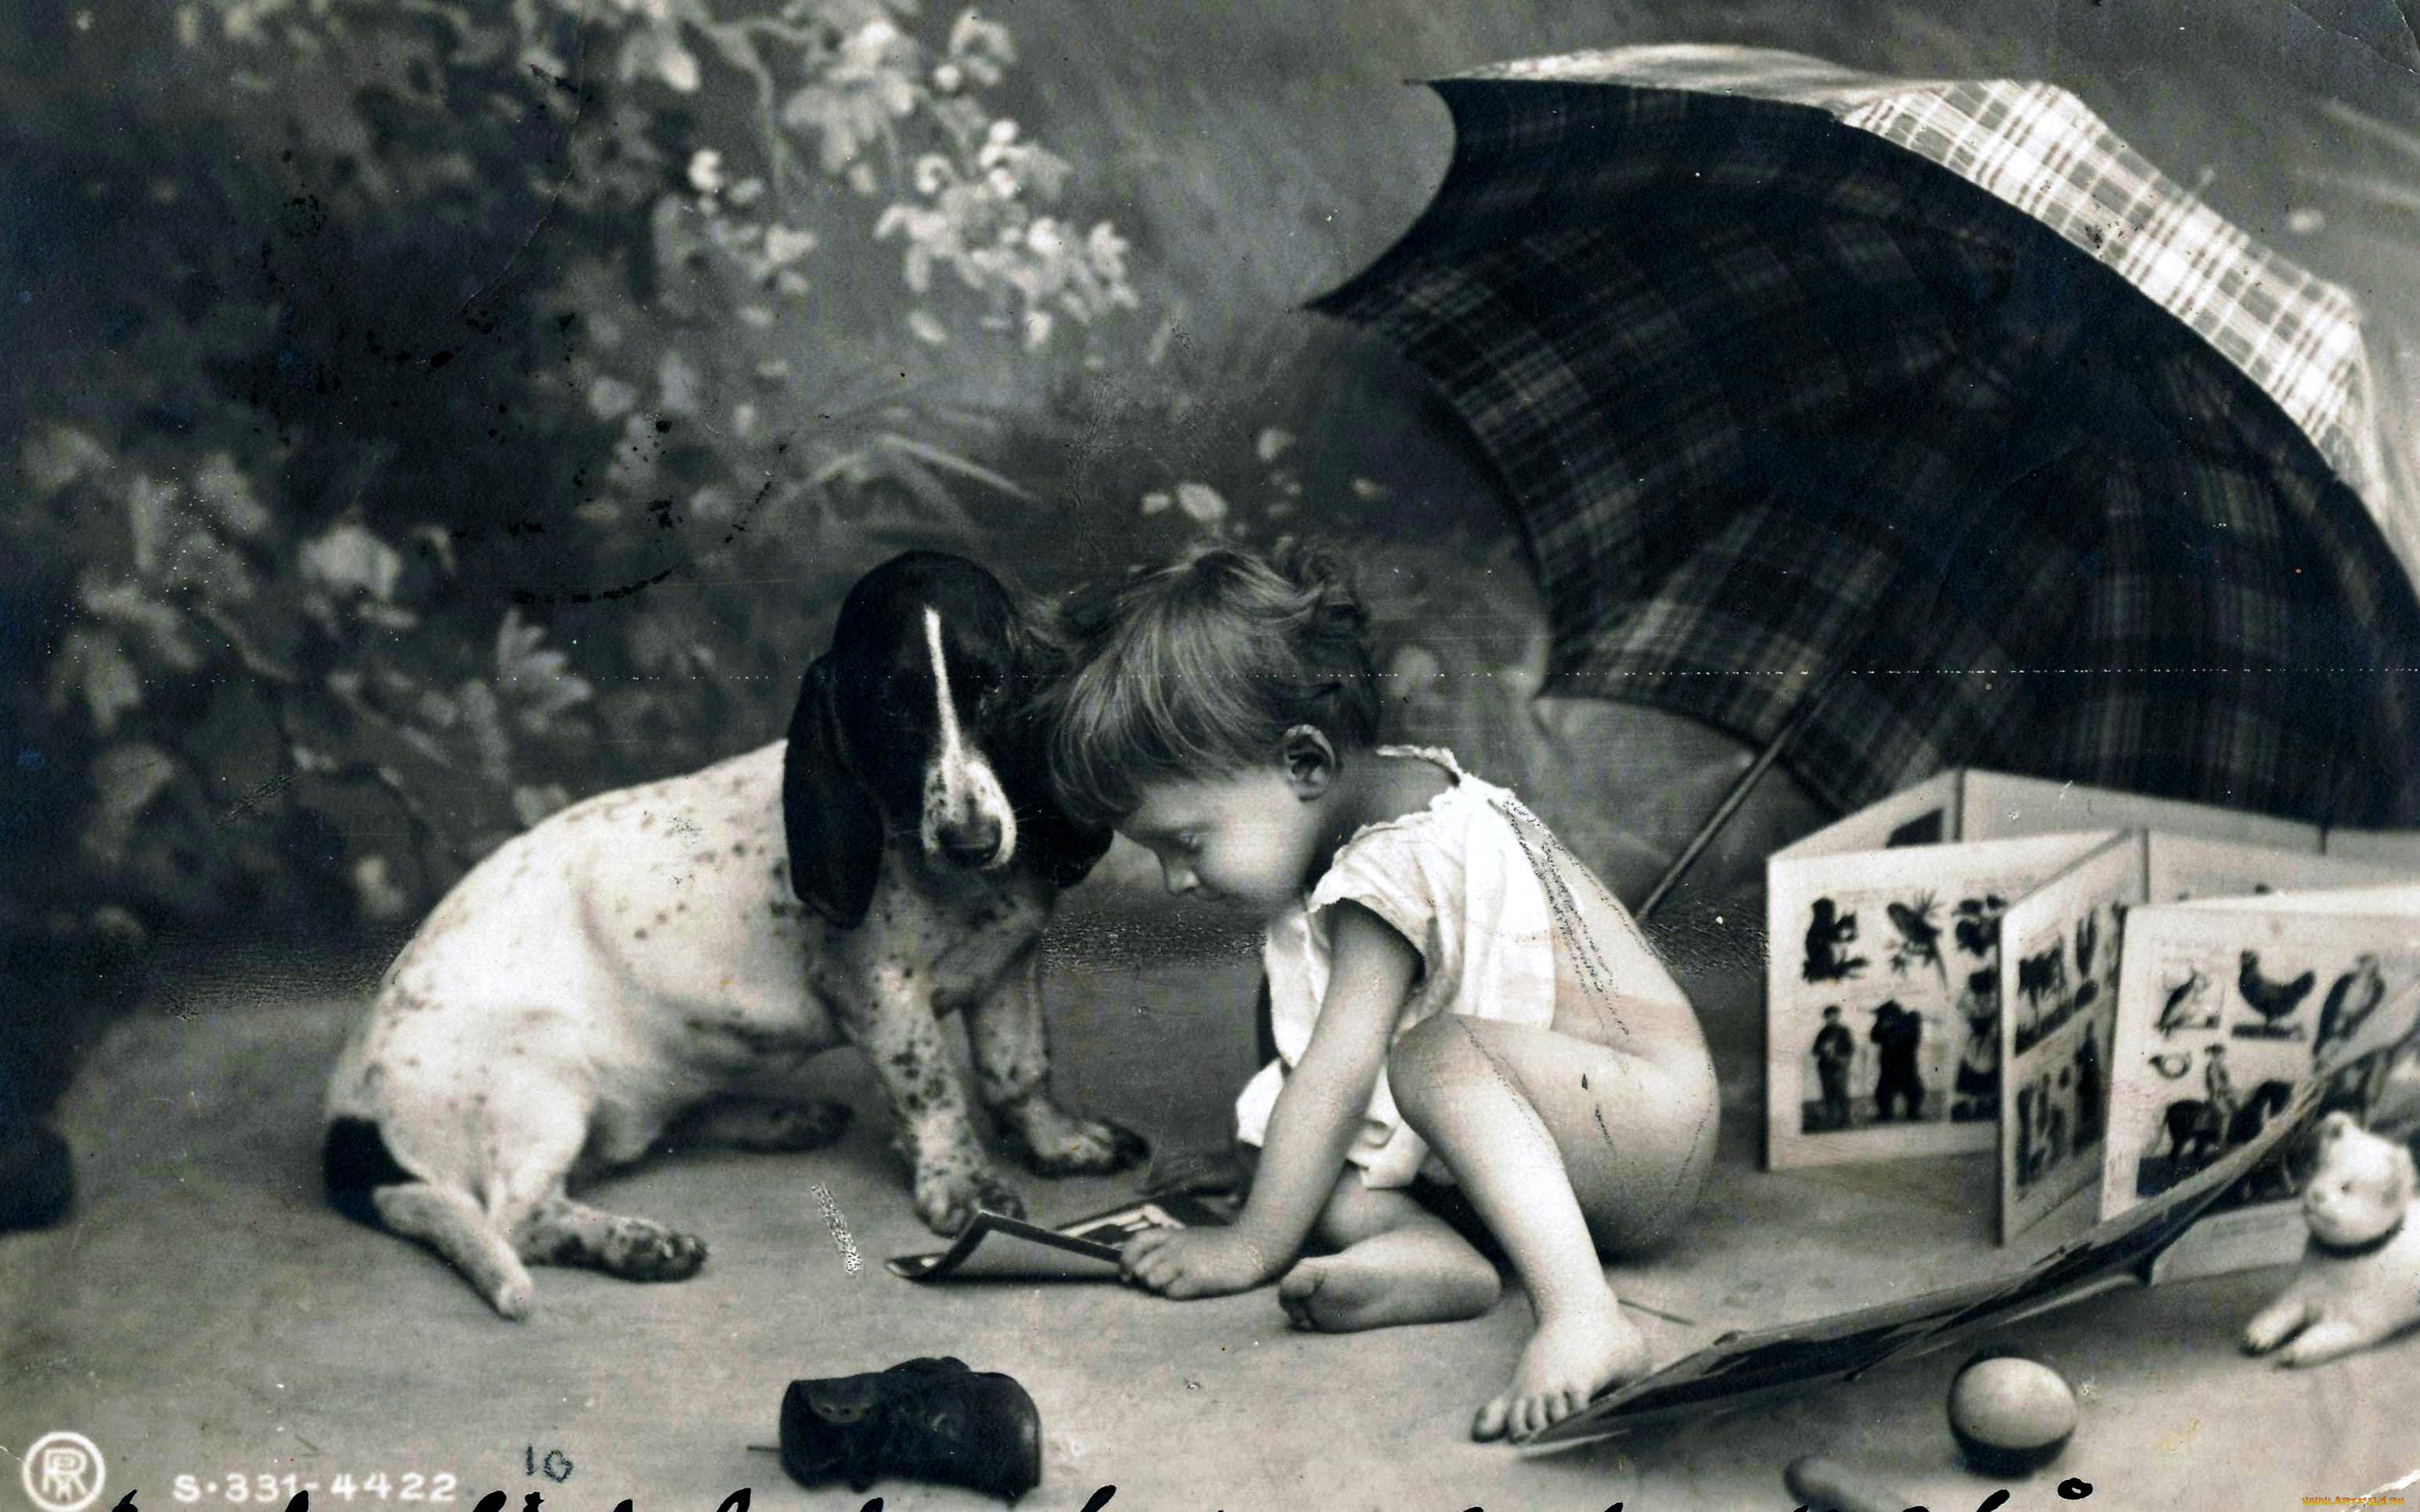 разное, ретро, , винтаж, собака, зонт, черно-белая, книга, игрушки, открытка, ребенок